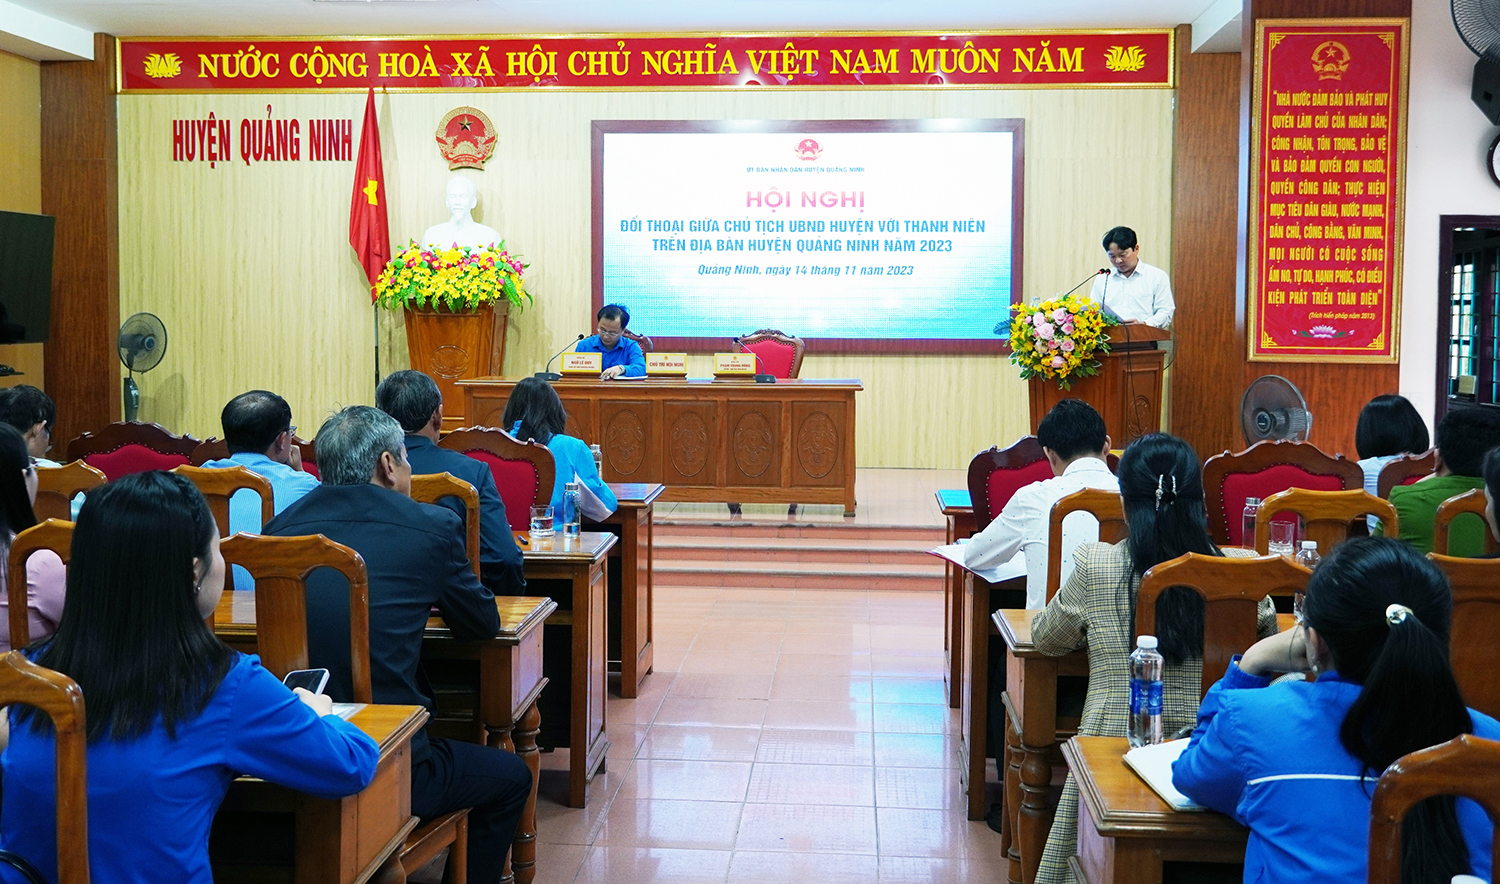 Quảng Ninh: Đối thoại giữa Chủ tịch UBND huyện với thanh niên